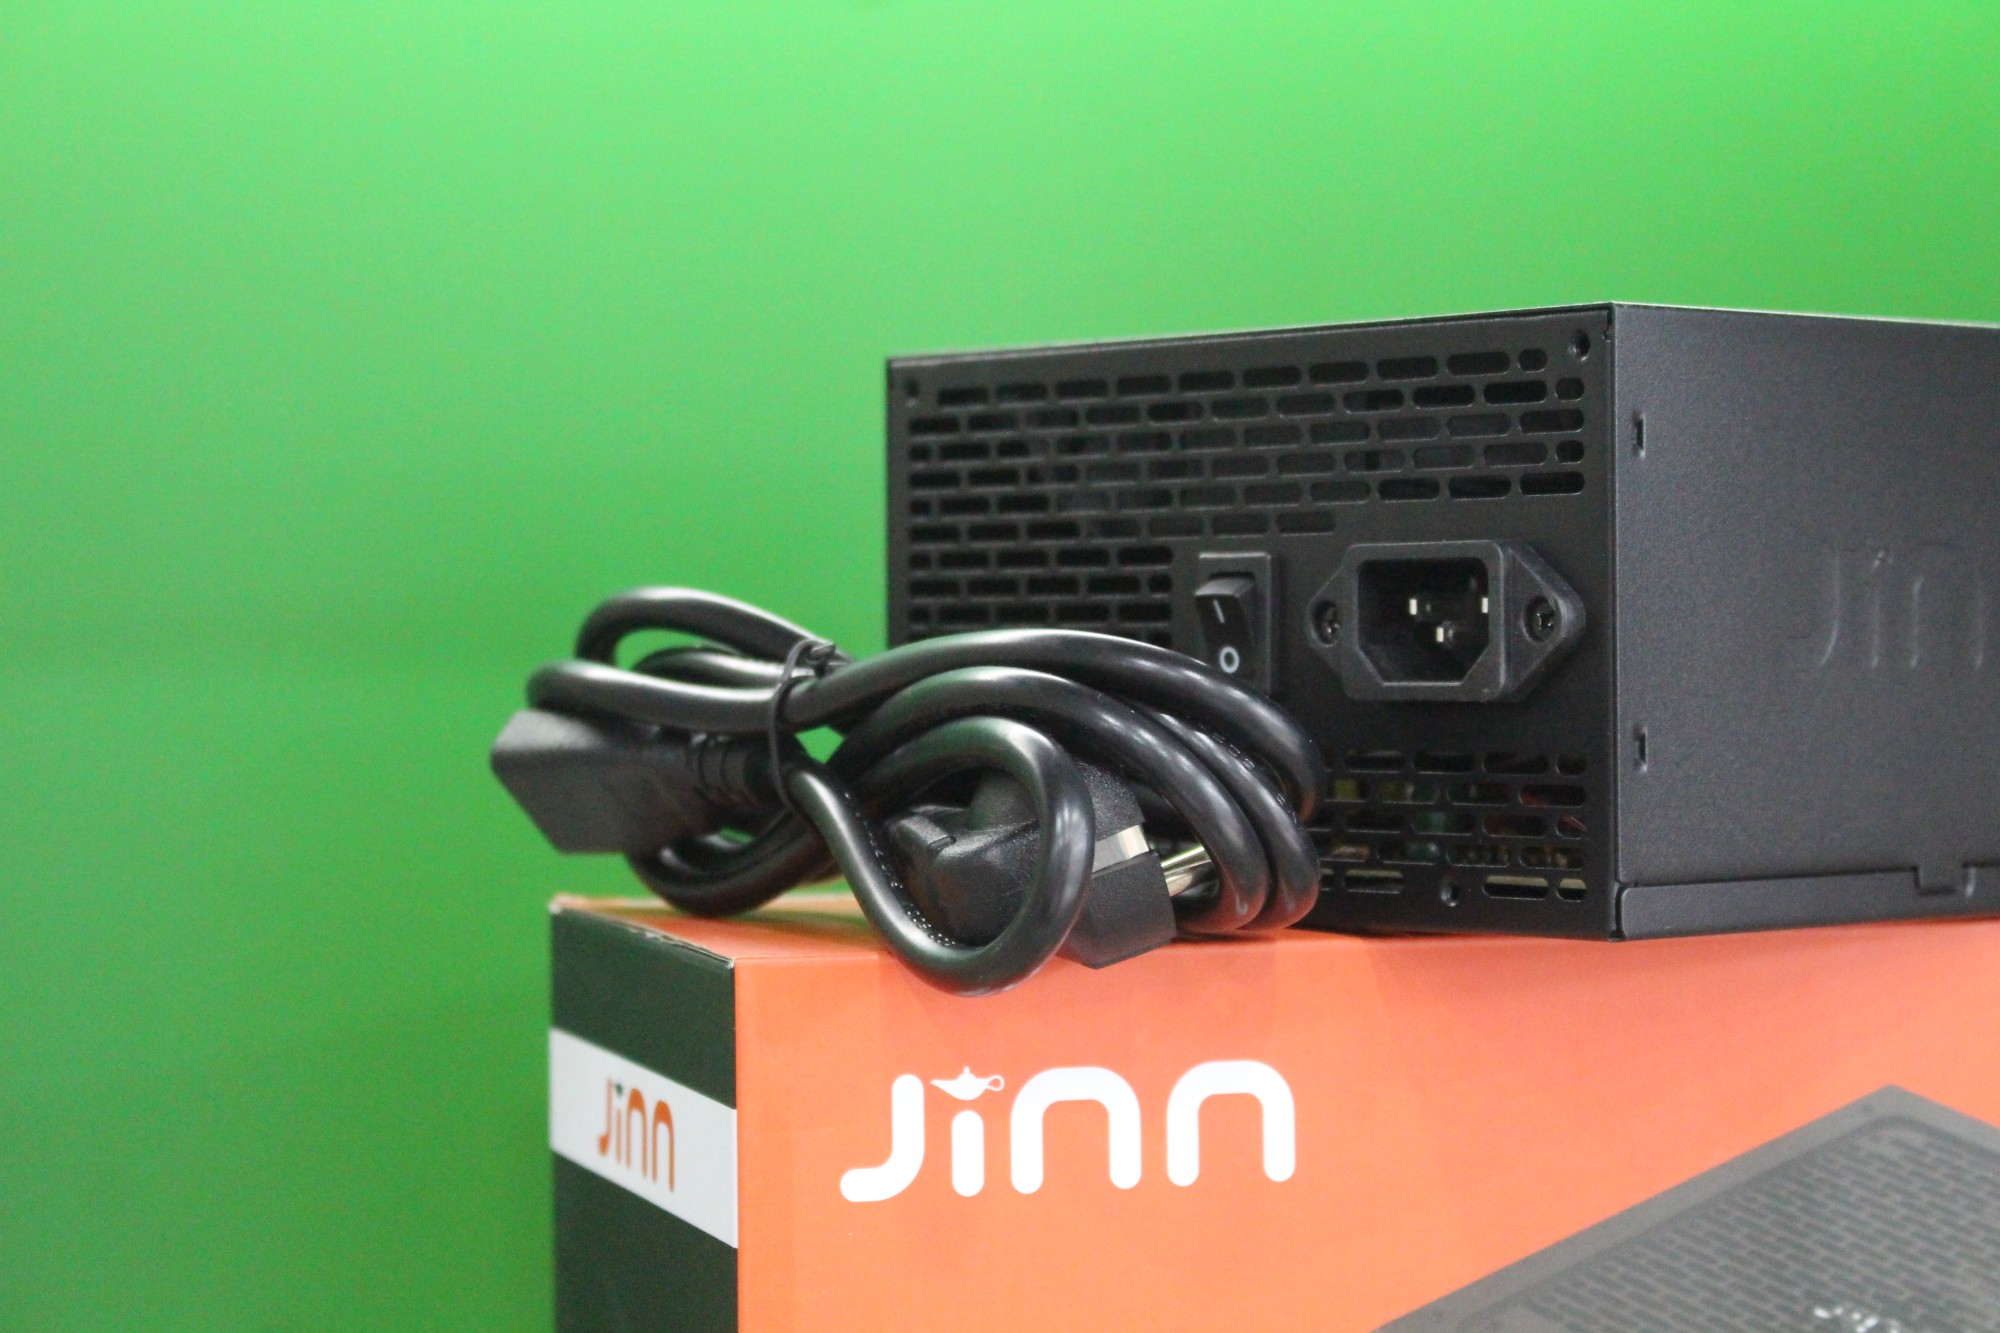 Nguồn Jinn J450 450W ATX